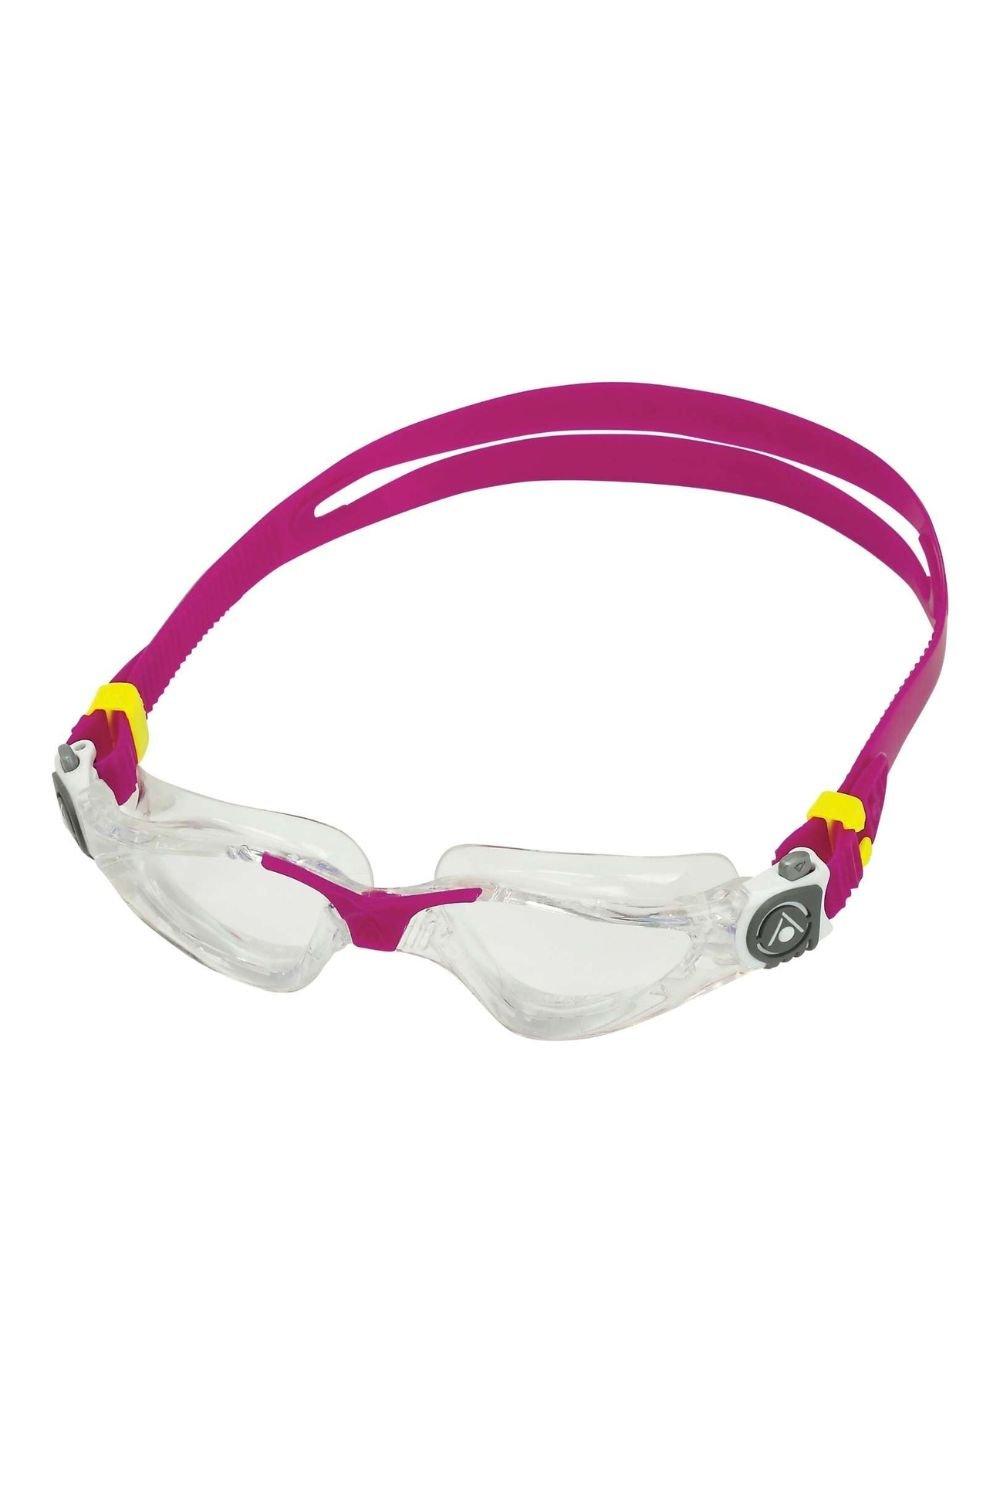 Женские очки для плавания Kayenne Aquasphere, розовый очки для плавания детские очки для плавания прямые продажи с завода водонепроницаемые противотуманные детские силиконовые очки очки